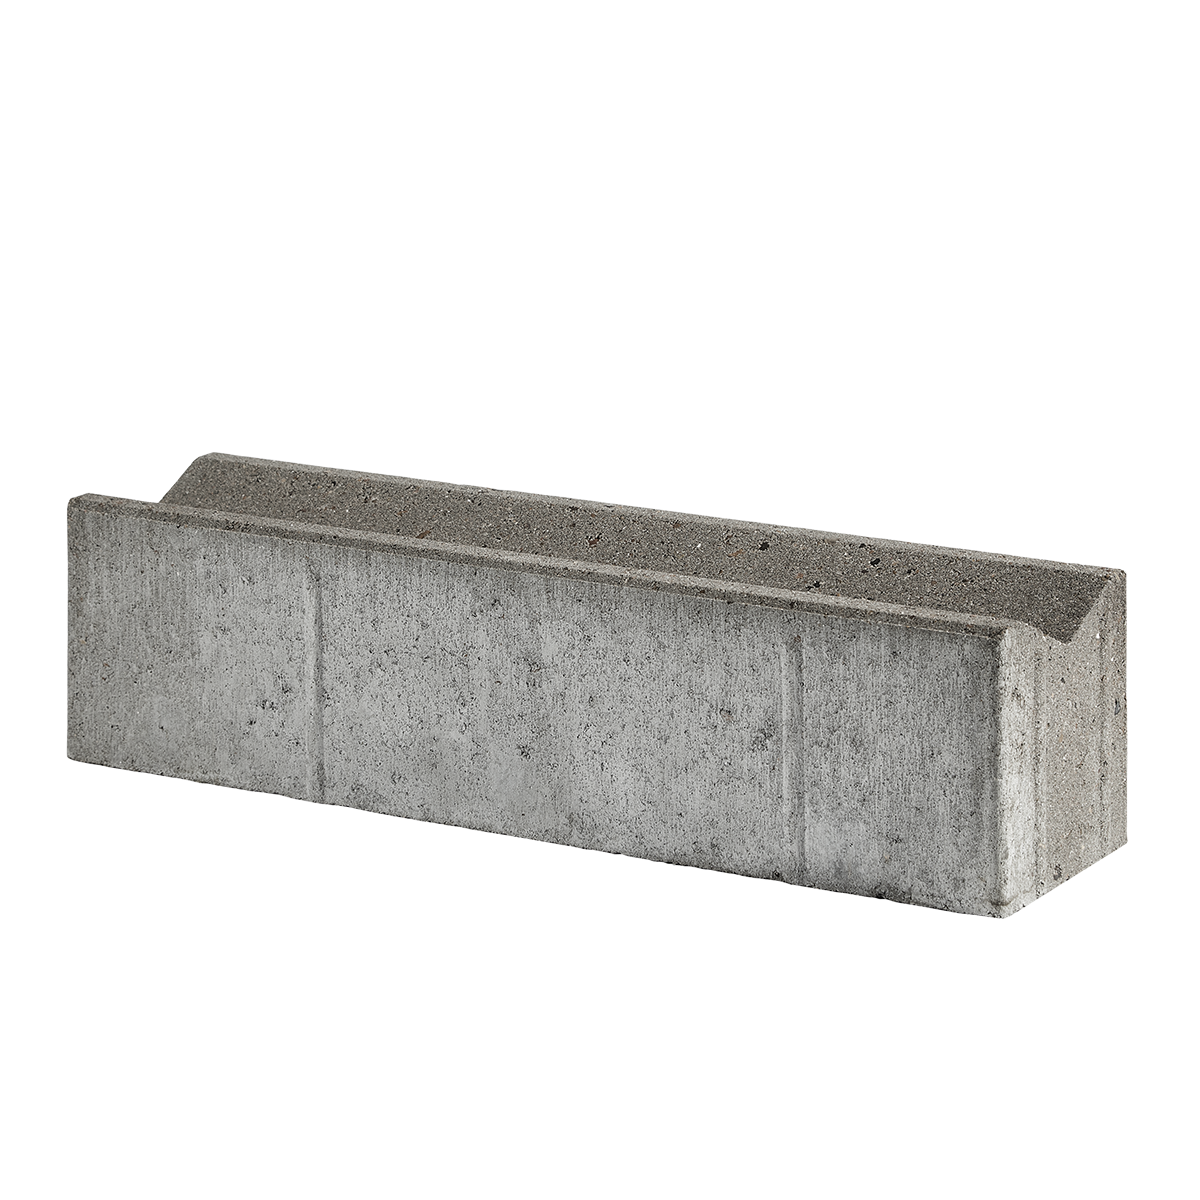 Albertslund-tiefbordsteine 15x15/12,5x60 cm Grau Muldensteine